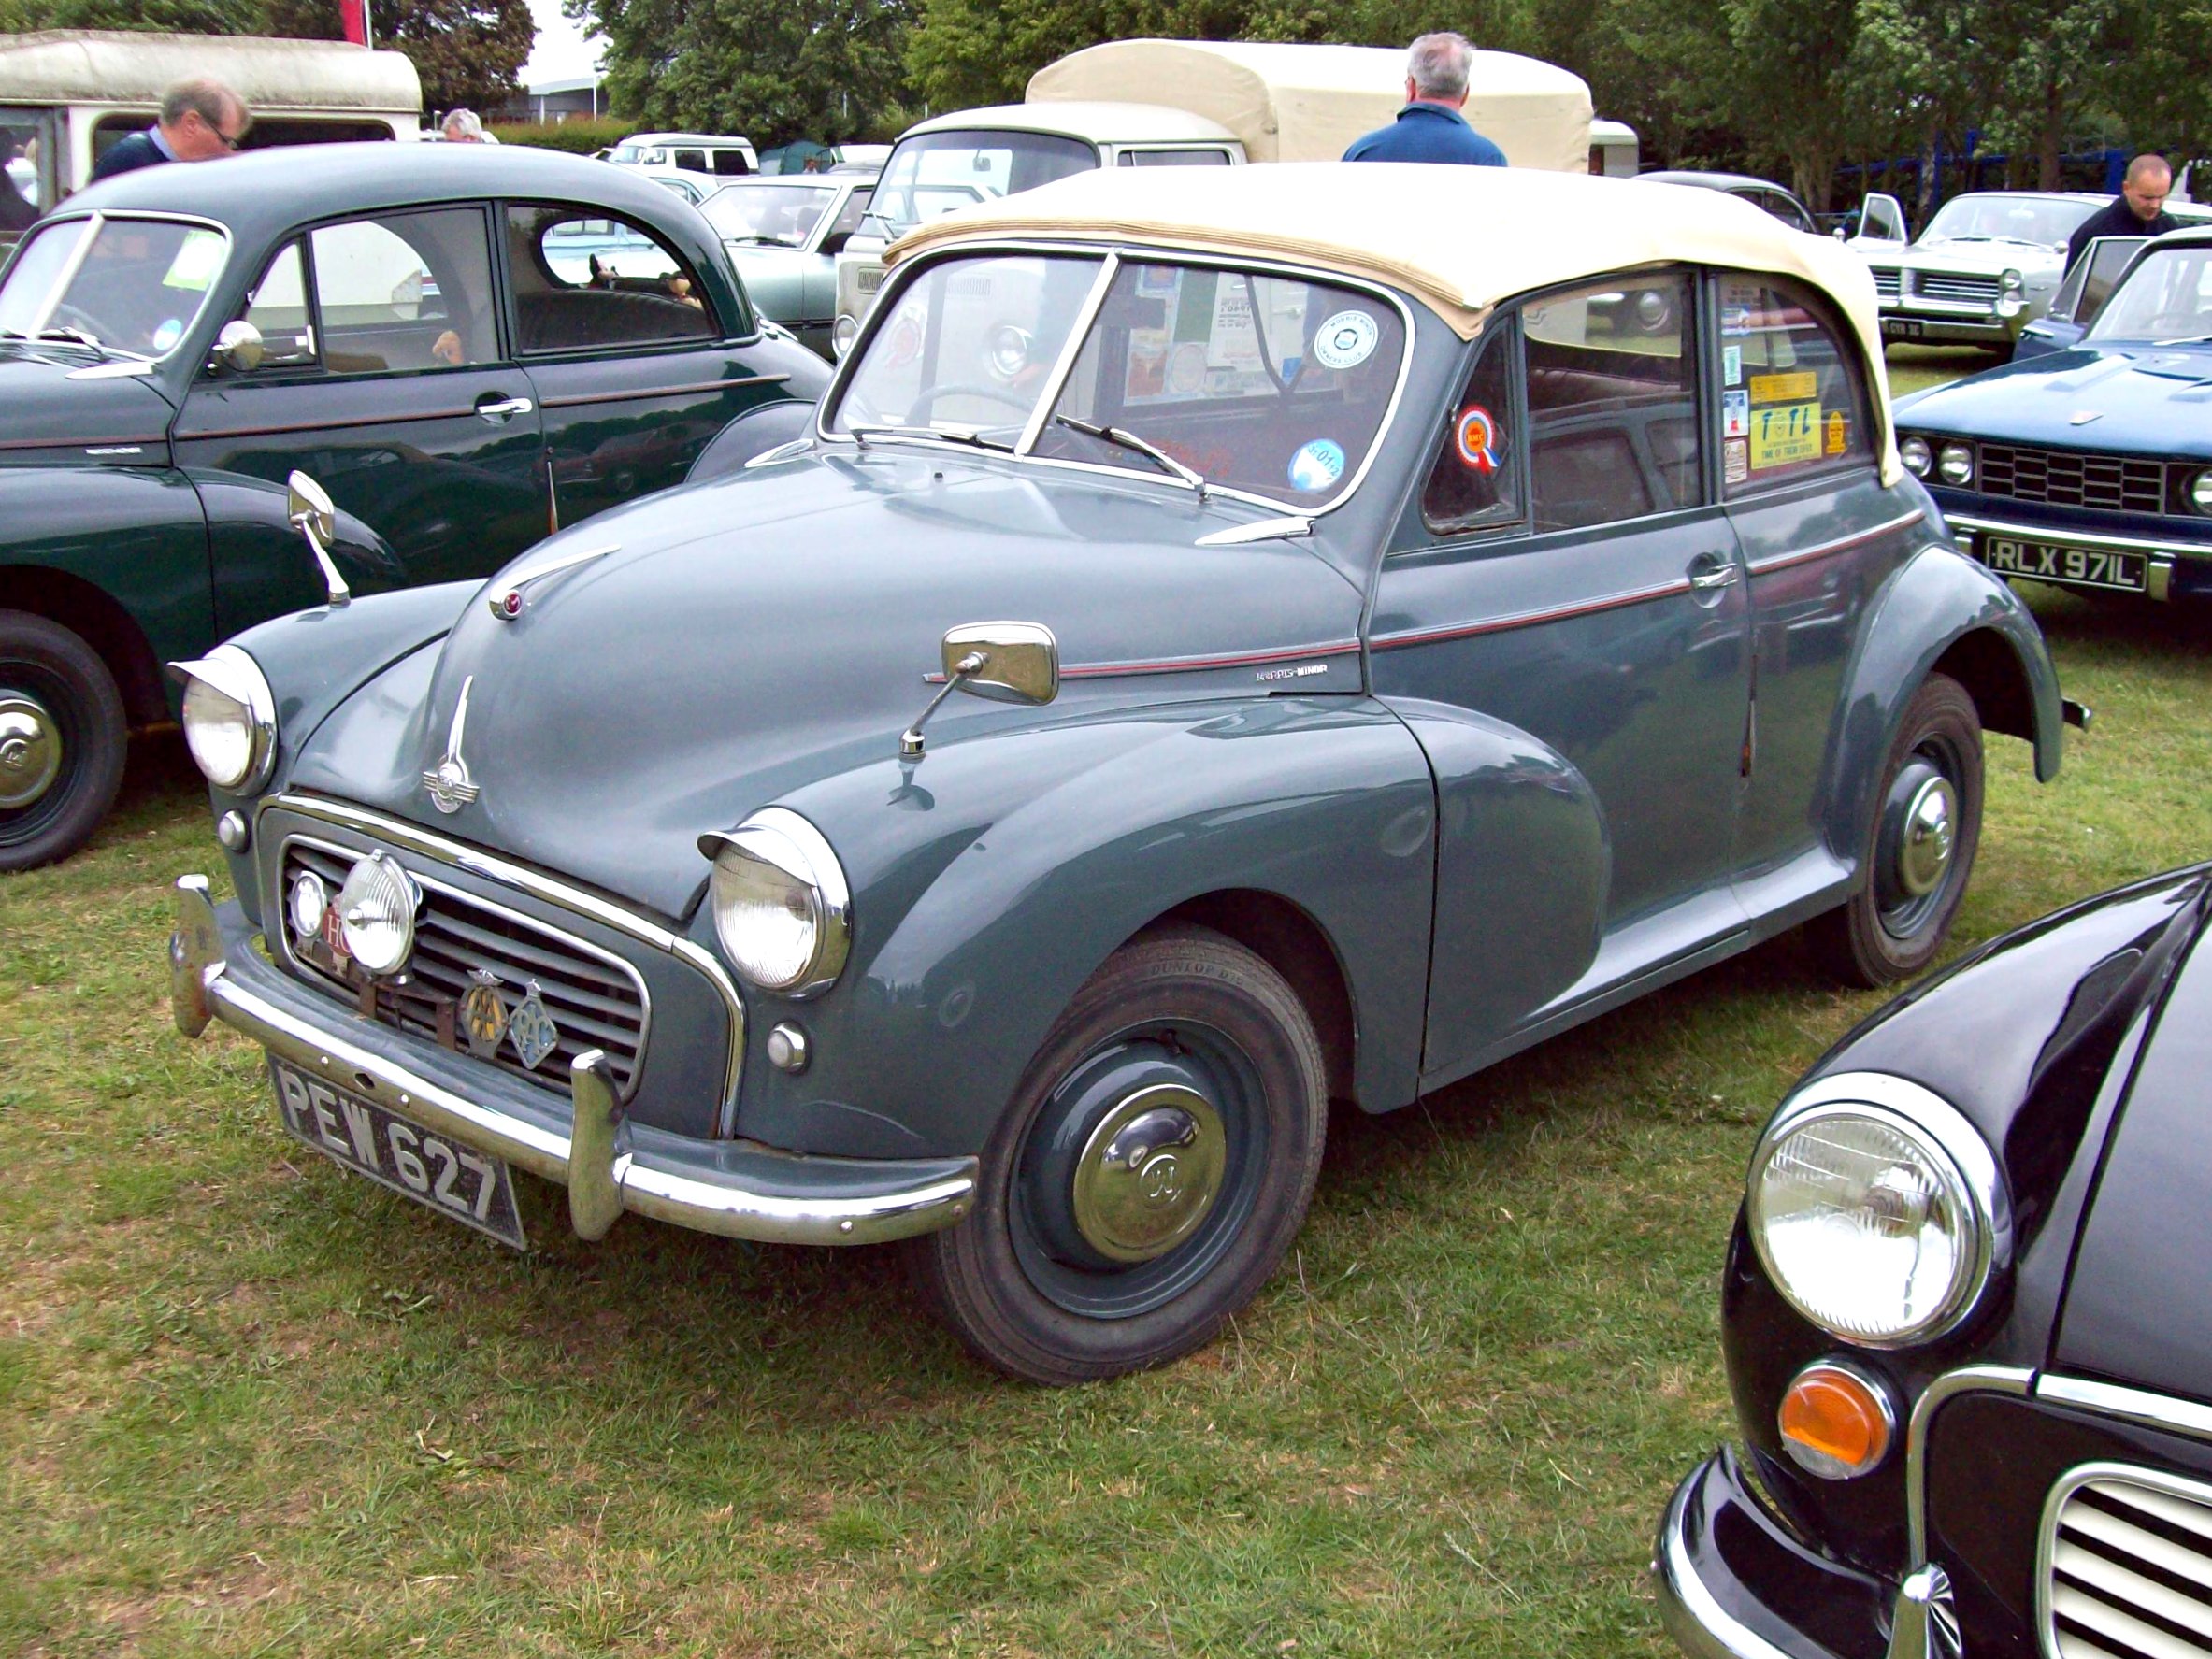 316 Morris Minor Convertible (1956) | Flickr - Photo Sharing!